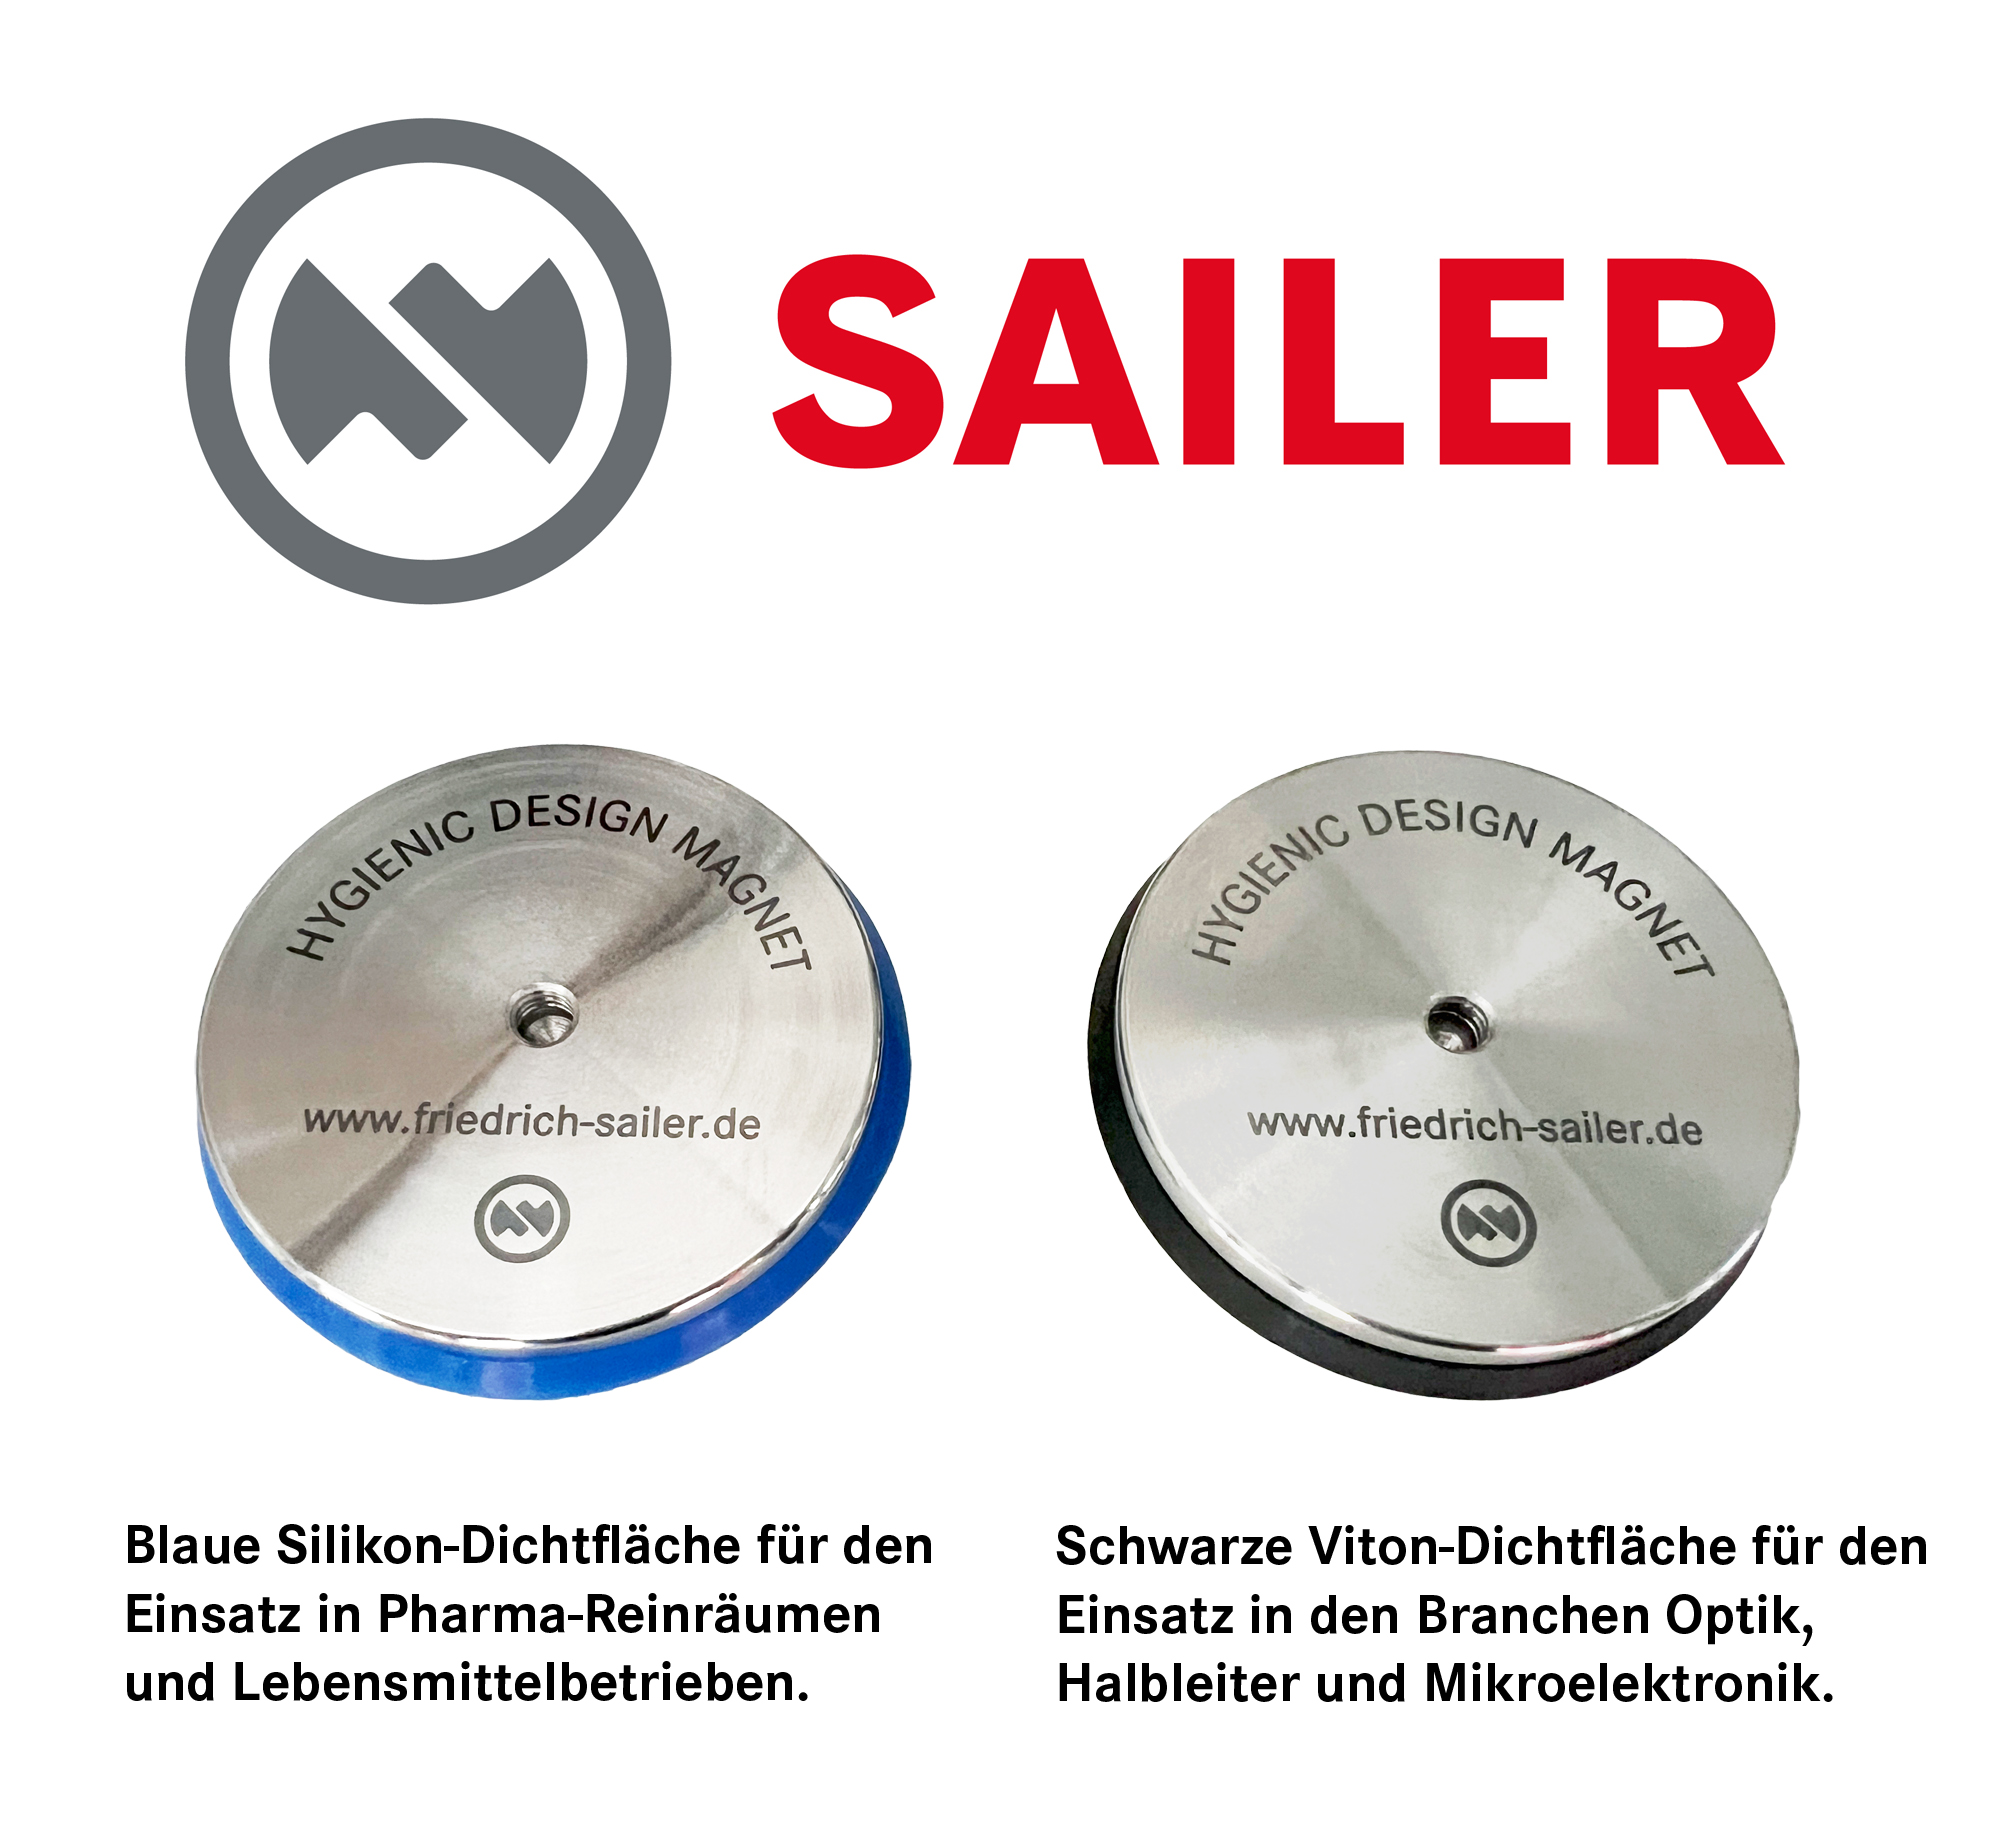 Produktneuheit: Sailer Hygienic Design Magnet jetzt auch für die Reinräume der Branchen Optik, Halbleiter und Mikroelektronik verfügbar